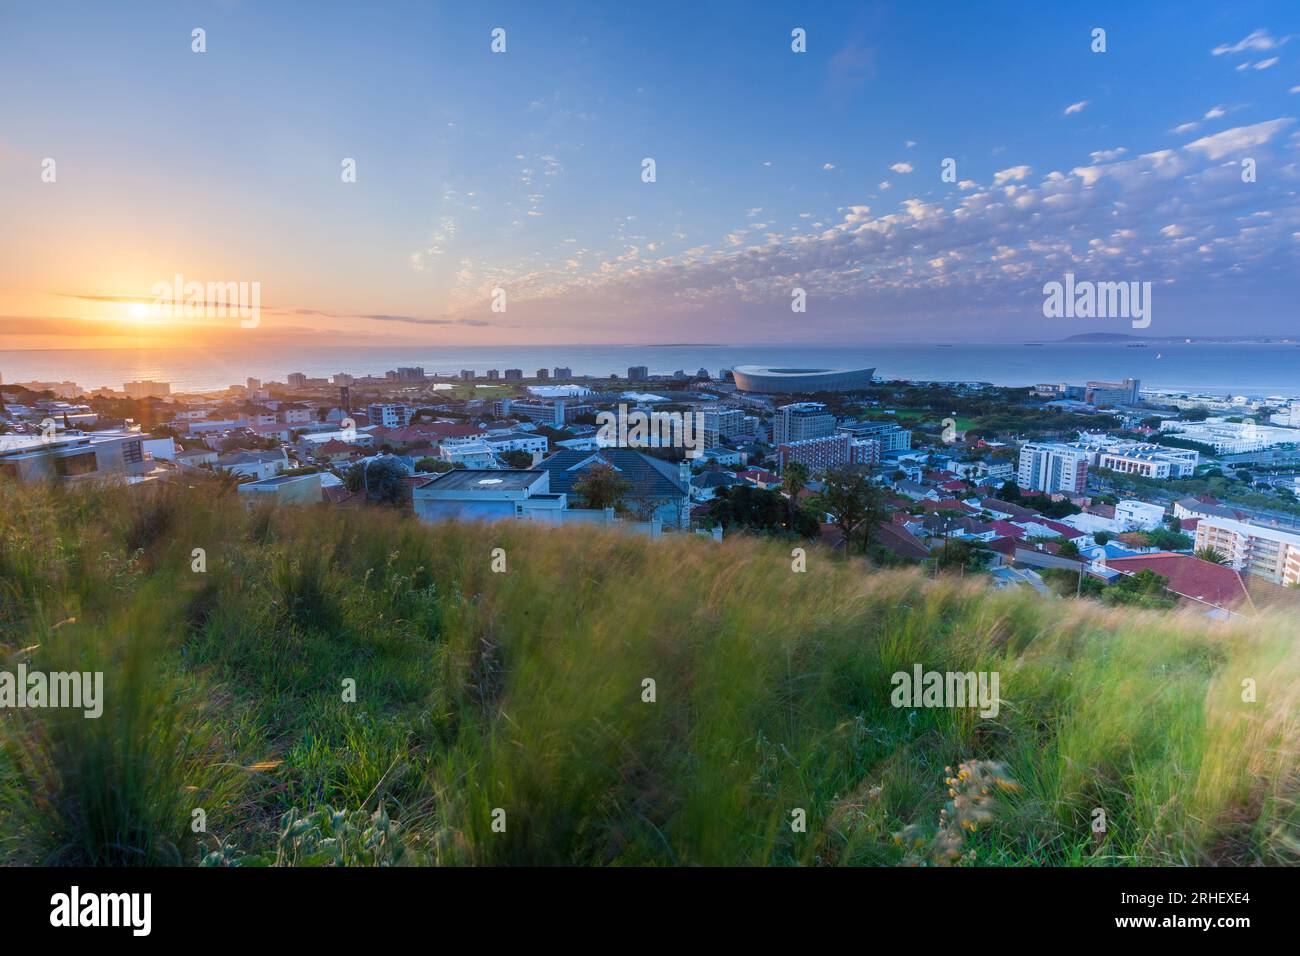 Signal colline point de mer point vert atlantic Seaboard cape Town avec coucher de soleil et beau paysage pittoresque rose photographie destination de voyage Banque D'Images